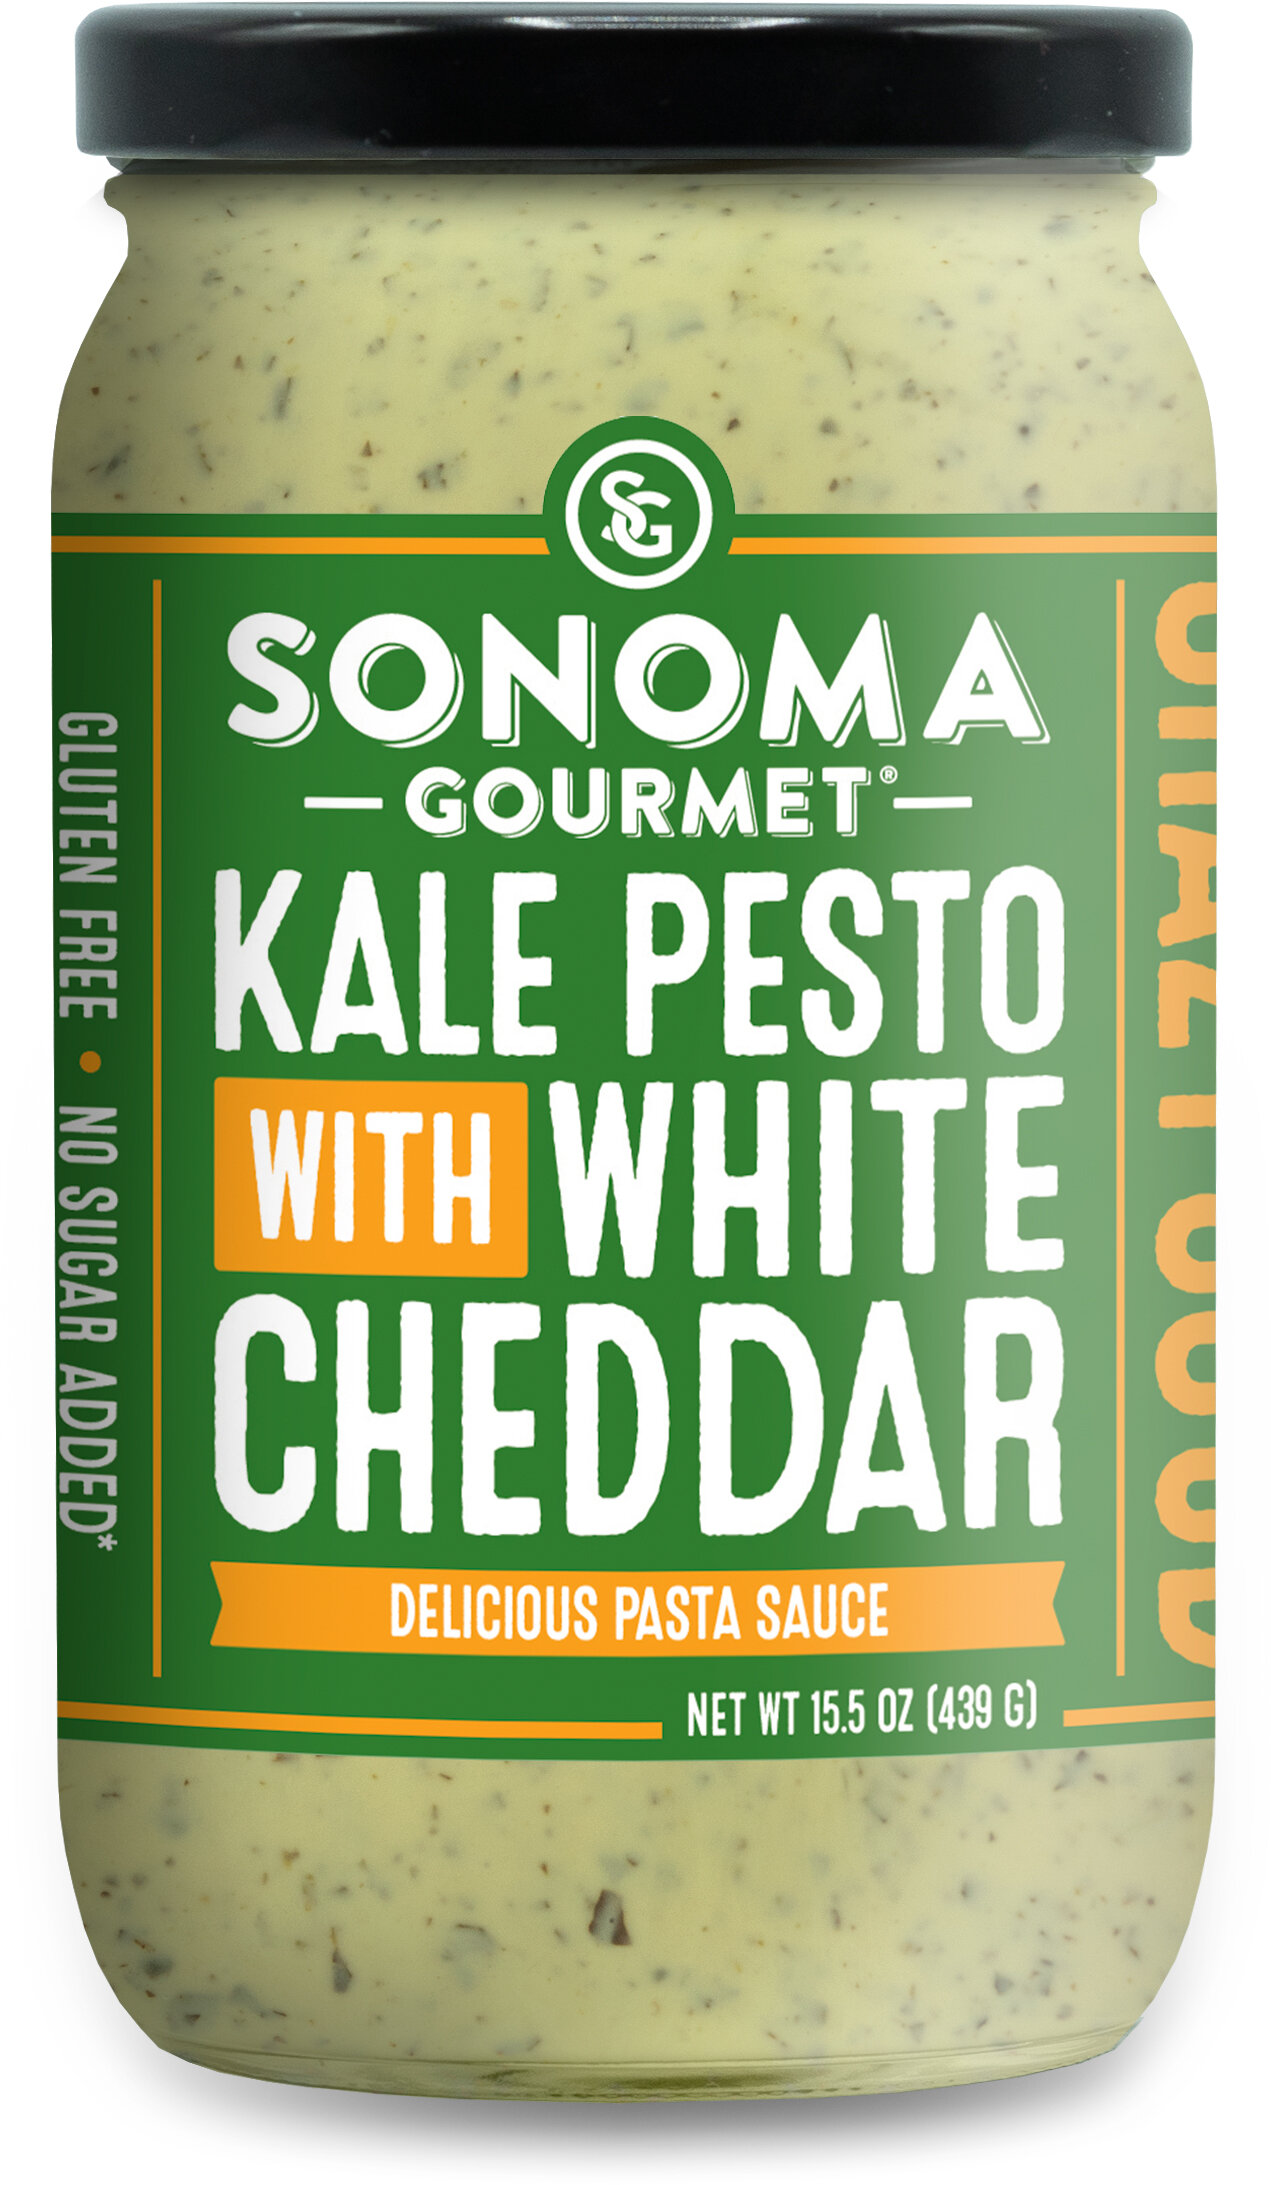 Kale Pesto White Cheddar Sauce Sonoma Gourmet